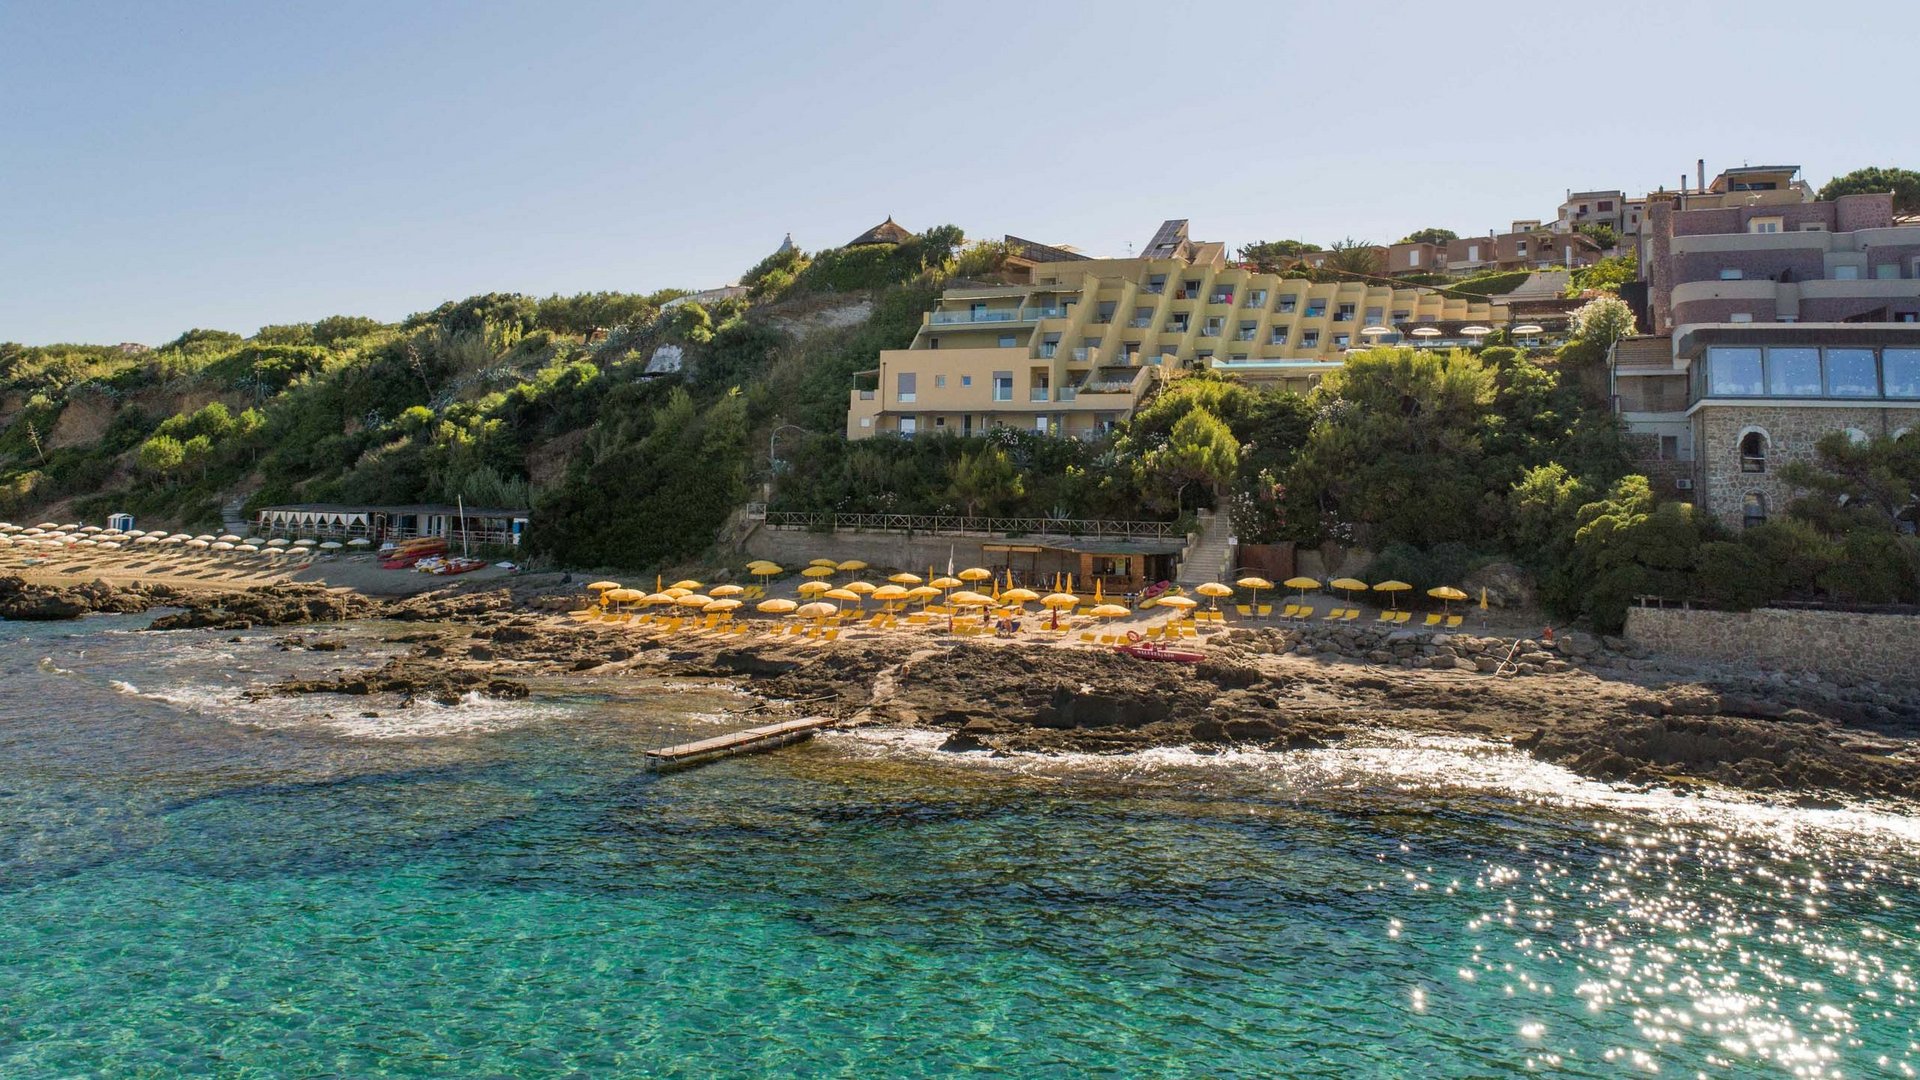 Urlaub + Amalfiküste = Hotel San Pietro!